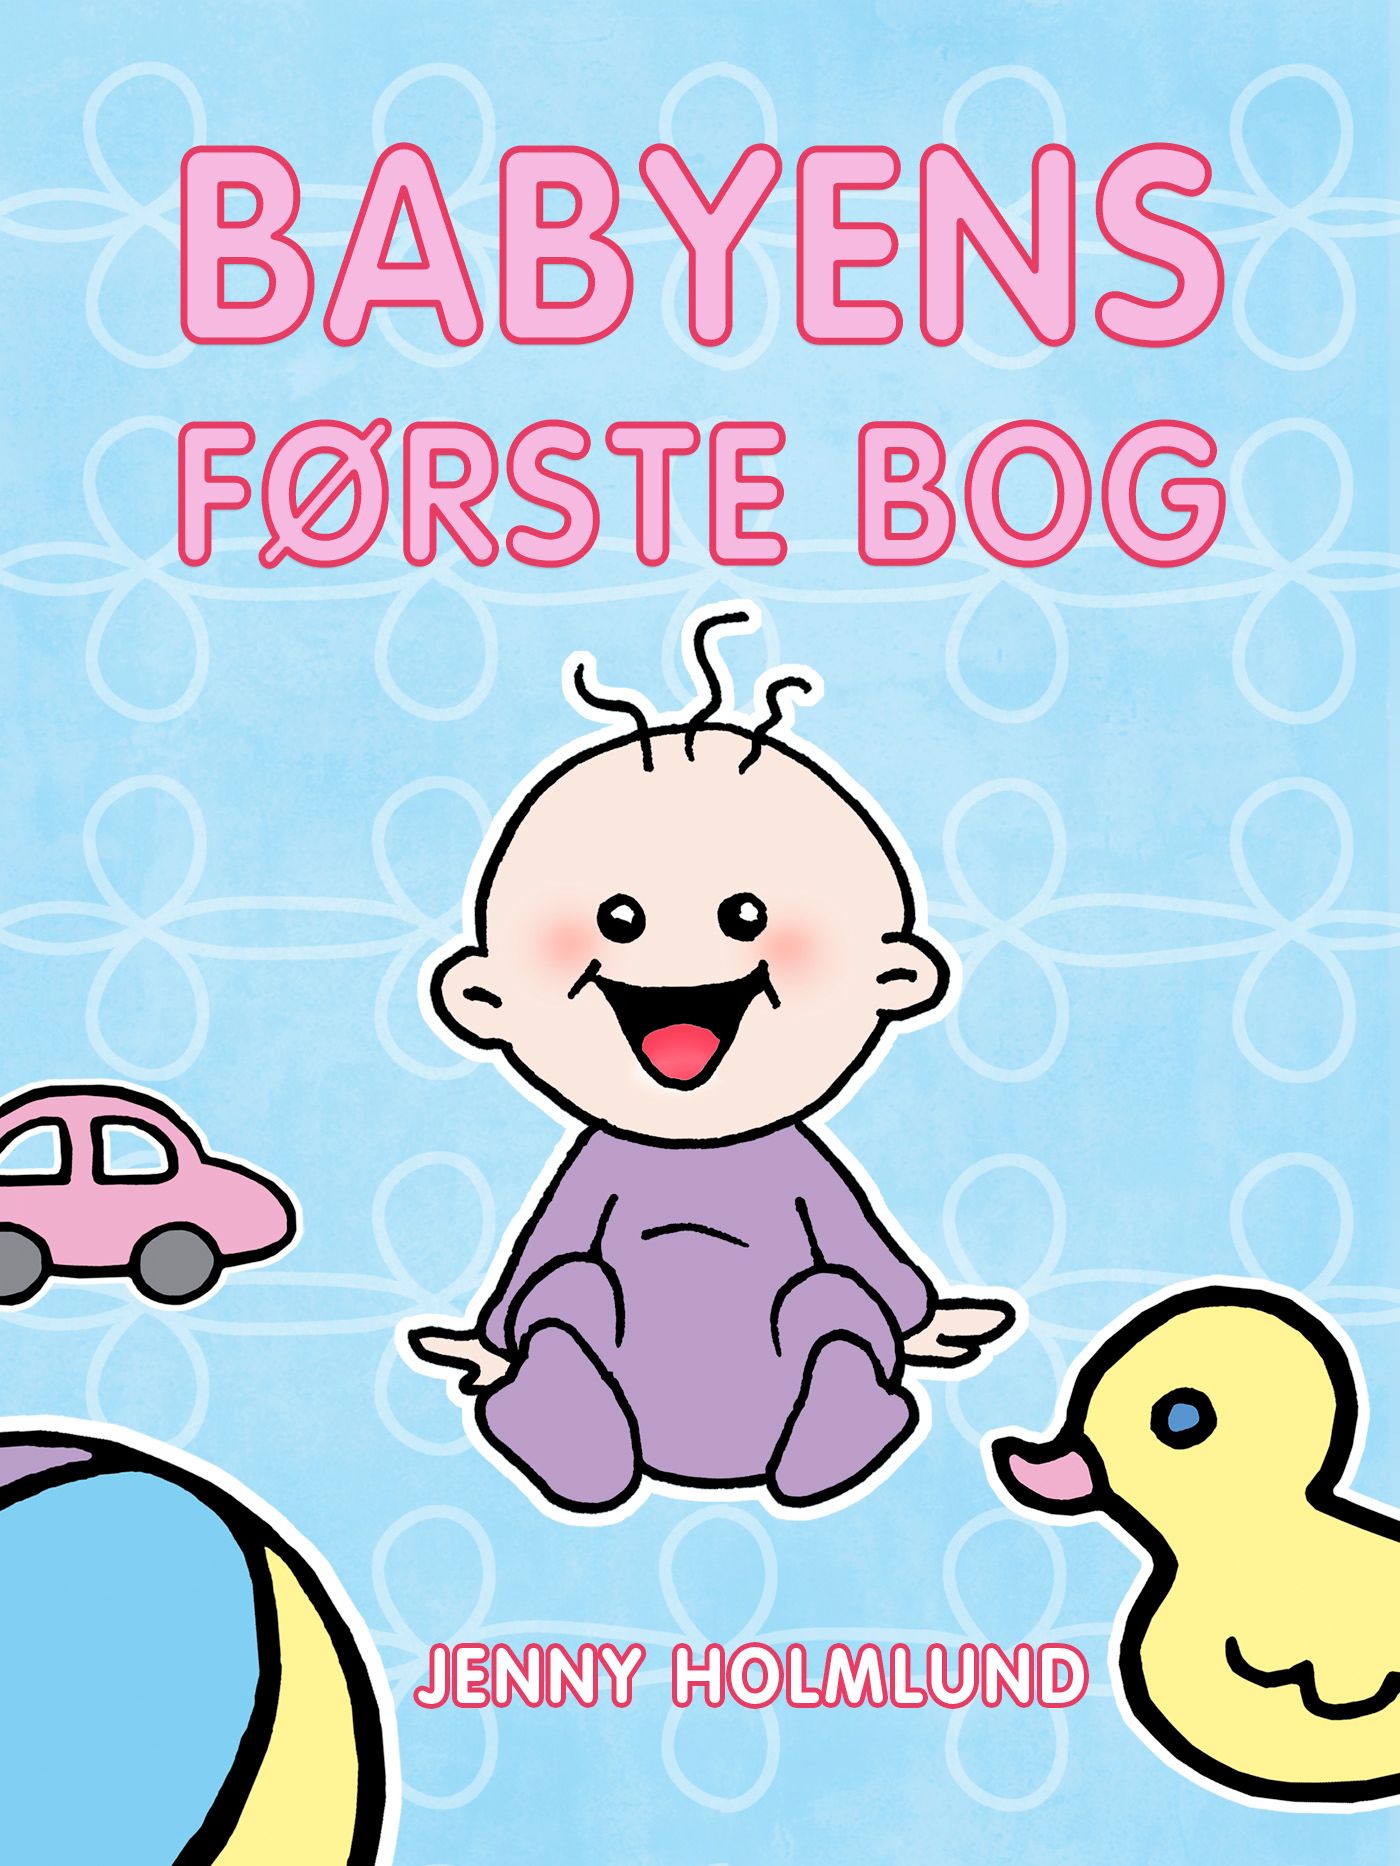 Babyens Første Bog, eBook by Jenny Holmlund